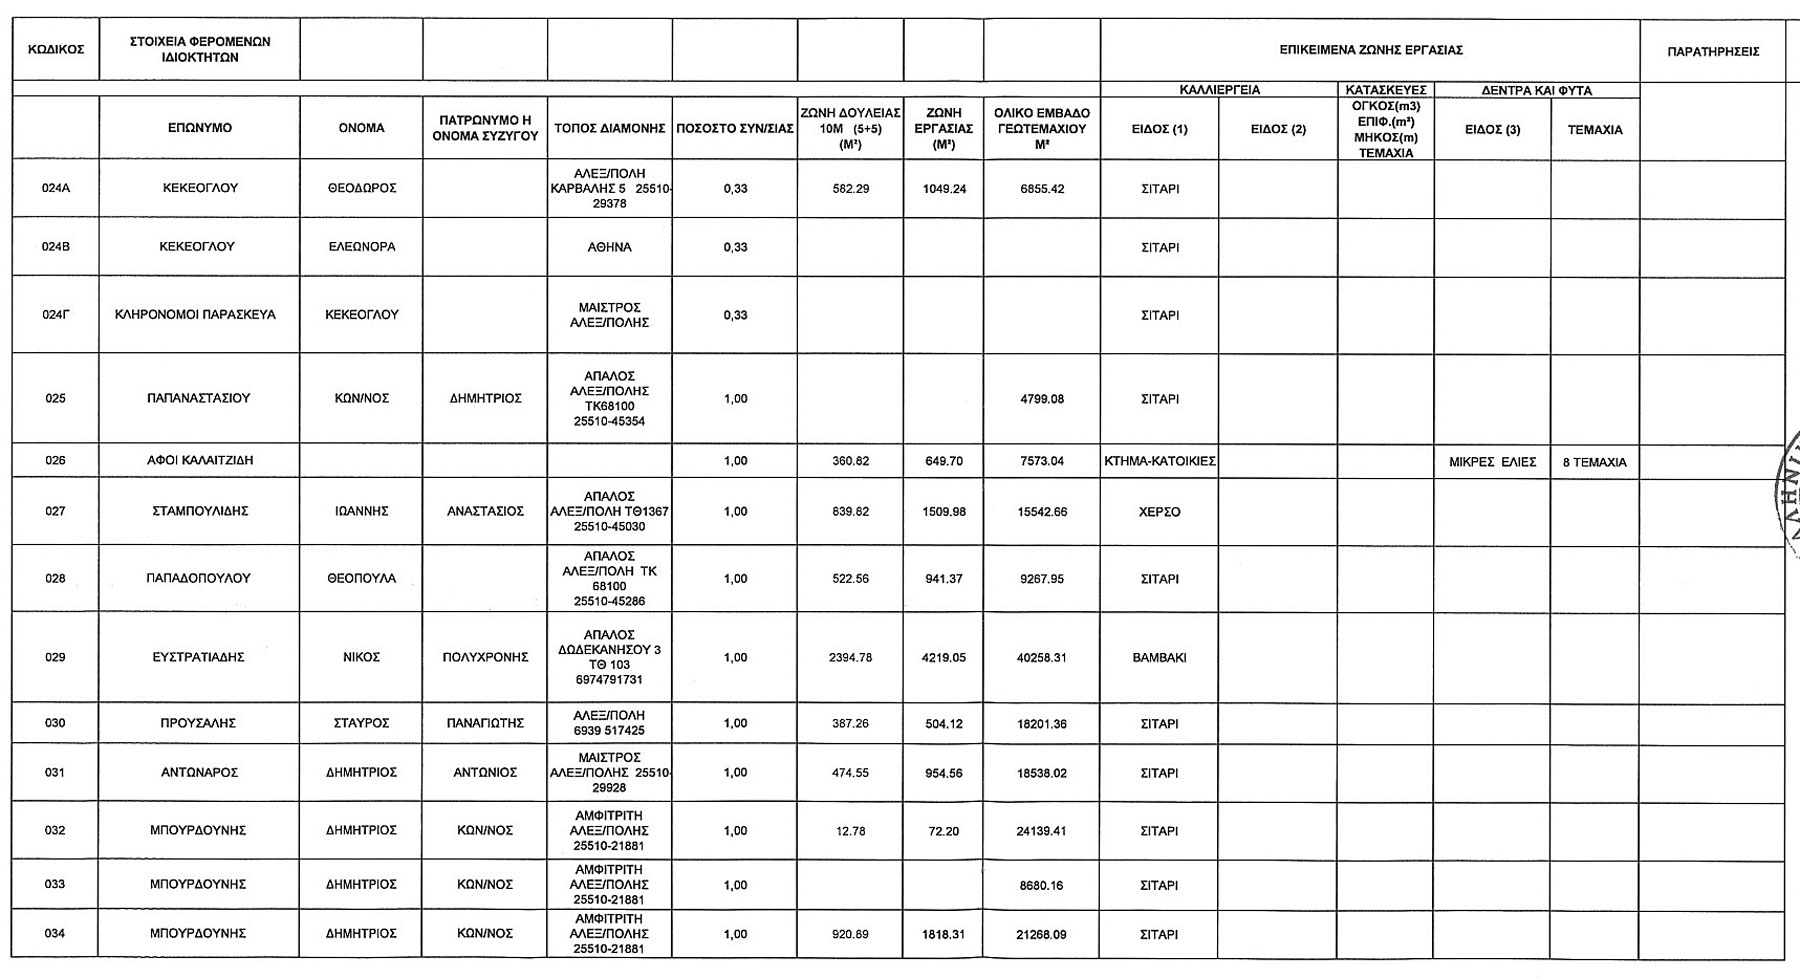 Κτηματολογικός Πίνακας Θιγόμενων Ιδιοκτησιών από χερσαίο τμήμα ΑΣΦΑ Αλεξανδρούπολης Σελ.3 (ΦΕΚ Β' 3528/30.12.2014)